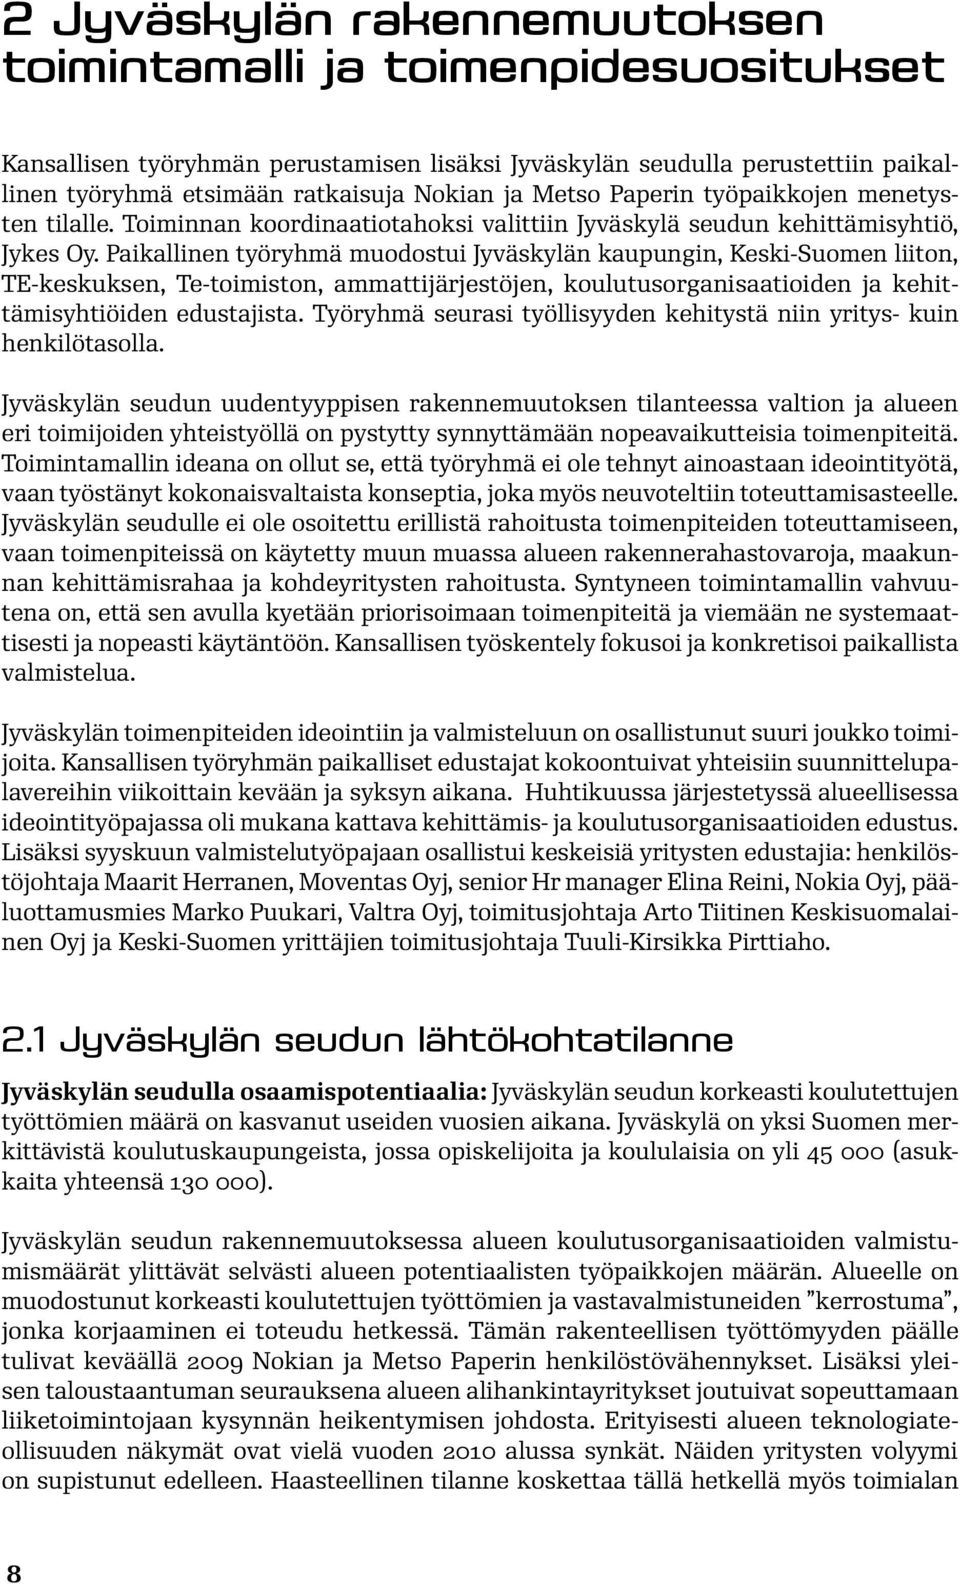 Paikallinen työryhmä muodostui Jyväskylän kaupungin, Keski-Suomen liiton, TE-keskuksen, Te-toimiston, ammattijärjestöjen, koulutusorganisaatioiden ja kehittämisyhtiöiden edustajista.